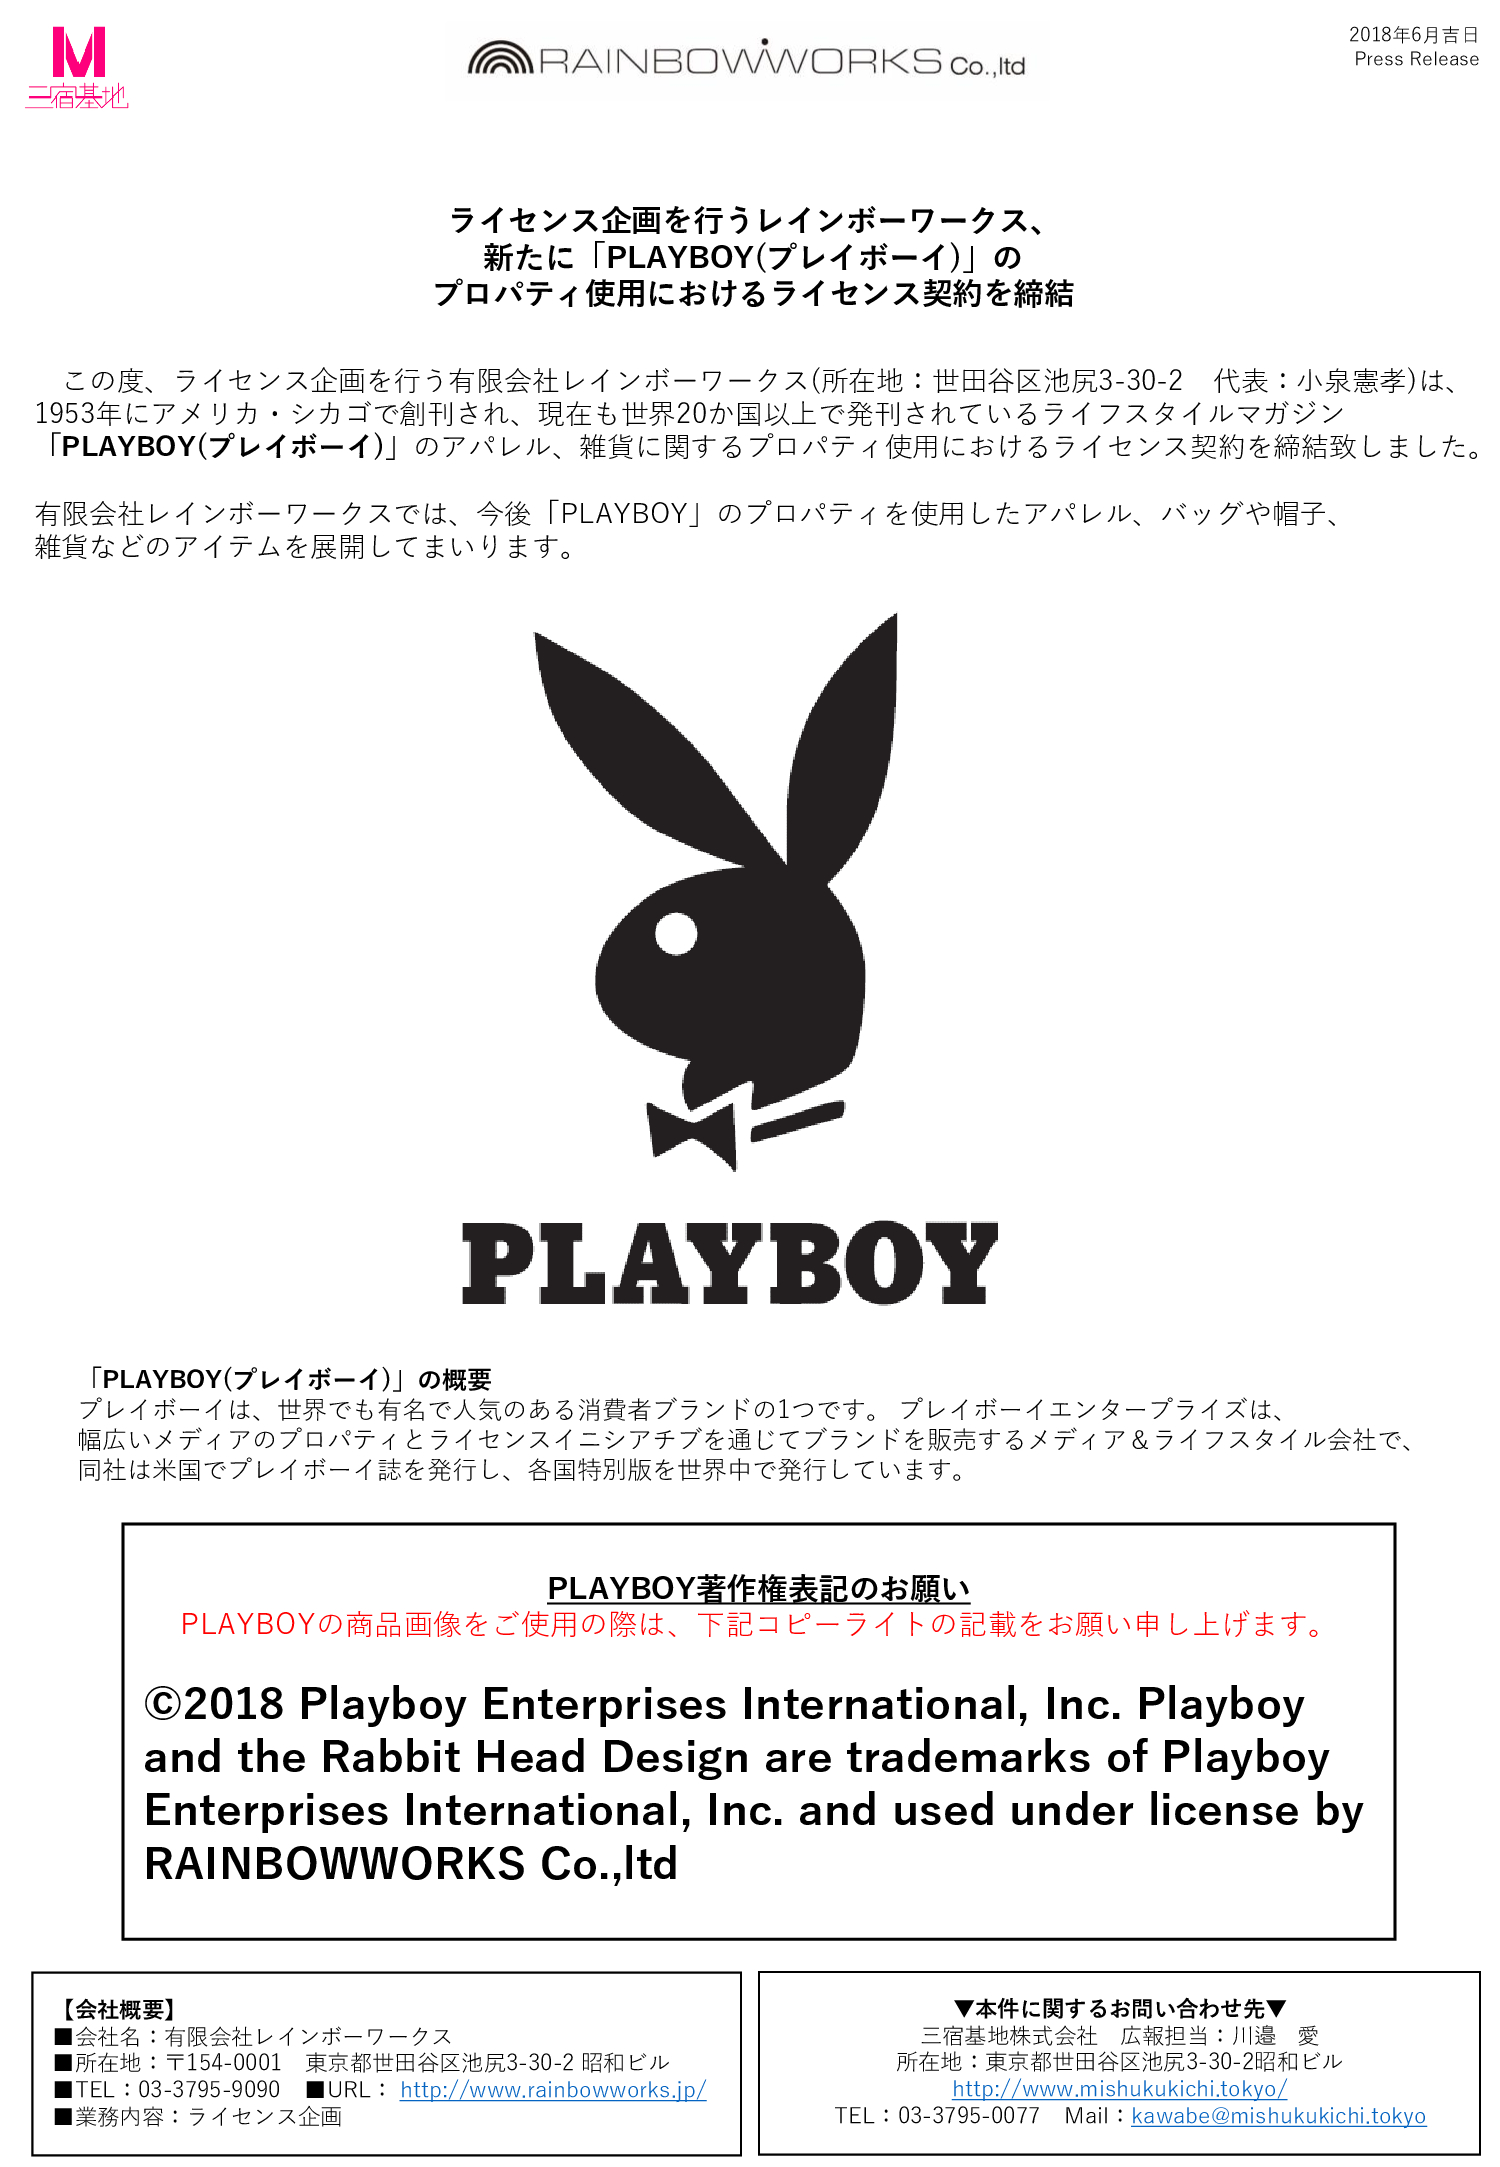 Playboyのプロパティ使用におけるライセンス契約を締結 Rainbowworks